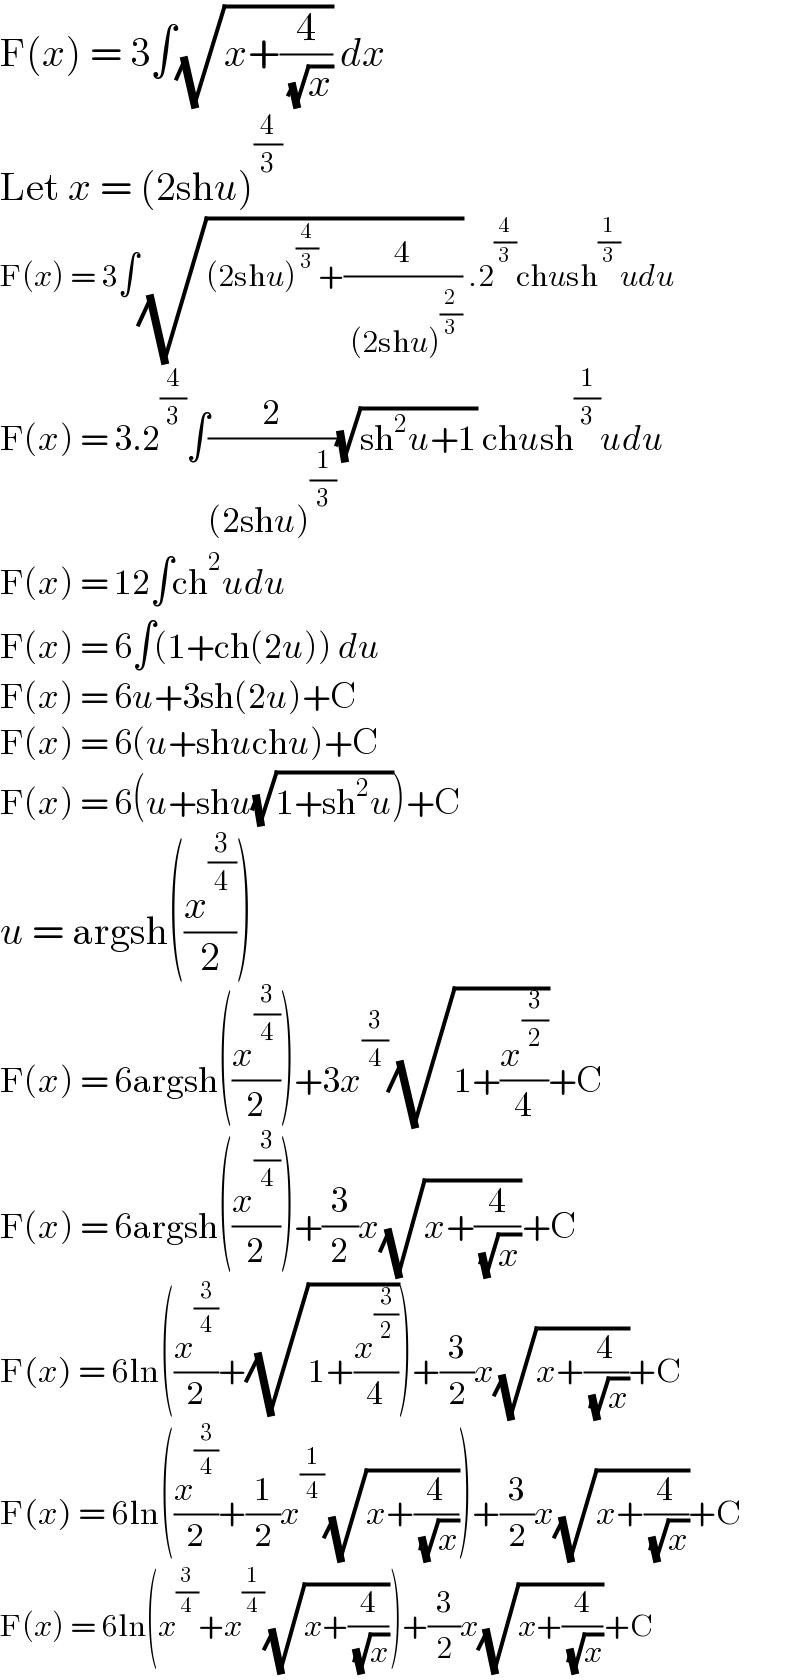 F(x) = 3∫(√(x+(4/( (√x))))) dx  Let x = (2shu)^(4/3)   F(x) = 3∫(√((2shu)^(4/3) +(4/( (2shu)^(2/3) )))) .2^(4/3) chush^(1/3) udu  F(x) = 3.2^(4/3) ∫(2/((2shu)^(1/3) ))(√(sh^2 u+1)) chush^(1/3) udu  F(x) = 12∫ch^2 udu  F(x) = 6∫(1+ch(2u)) du  F(x) = 6u+3sh(2u)+C  F(x) = 6(u+shuchu)+C  F(x) = 6(u+shu(√(1+sh^2 u)))+C  u = argsh((x^(3/4) /2))  F(x) = 6argsh((x^(3/4) /2))+3x^(3/4) (√(1+(x^(3/2) /4)))+C  F(x) = 6argsh((x^(3/4) /2))+(3/2)x(√(x+(4/( (√x)))))+C  F(x) = 6ln((x^(3/4) /2)+(√(1+(x^(3/2) /4))))+(3/2)x(√(x+(4/( (√x)))))+C  F(x) = 6ln((x^(3/4) /2)+(1/2)x^(1/4) (√(x+(4/( (√x))))))+(3/2)x(√(x+(4/( (√x)))))+C  F(x) = 6ln(x^(3/4) +x^(1/4) (√(x+(4/( (√x))))))+(3/2)x(√(x+(4/( (√x)))))+C  